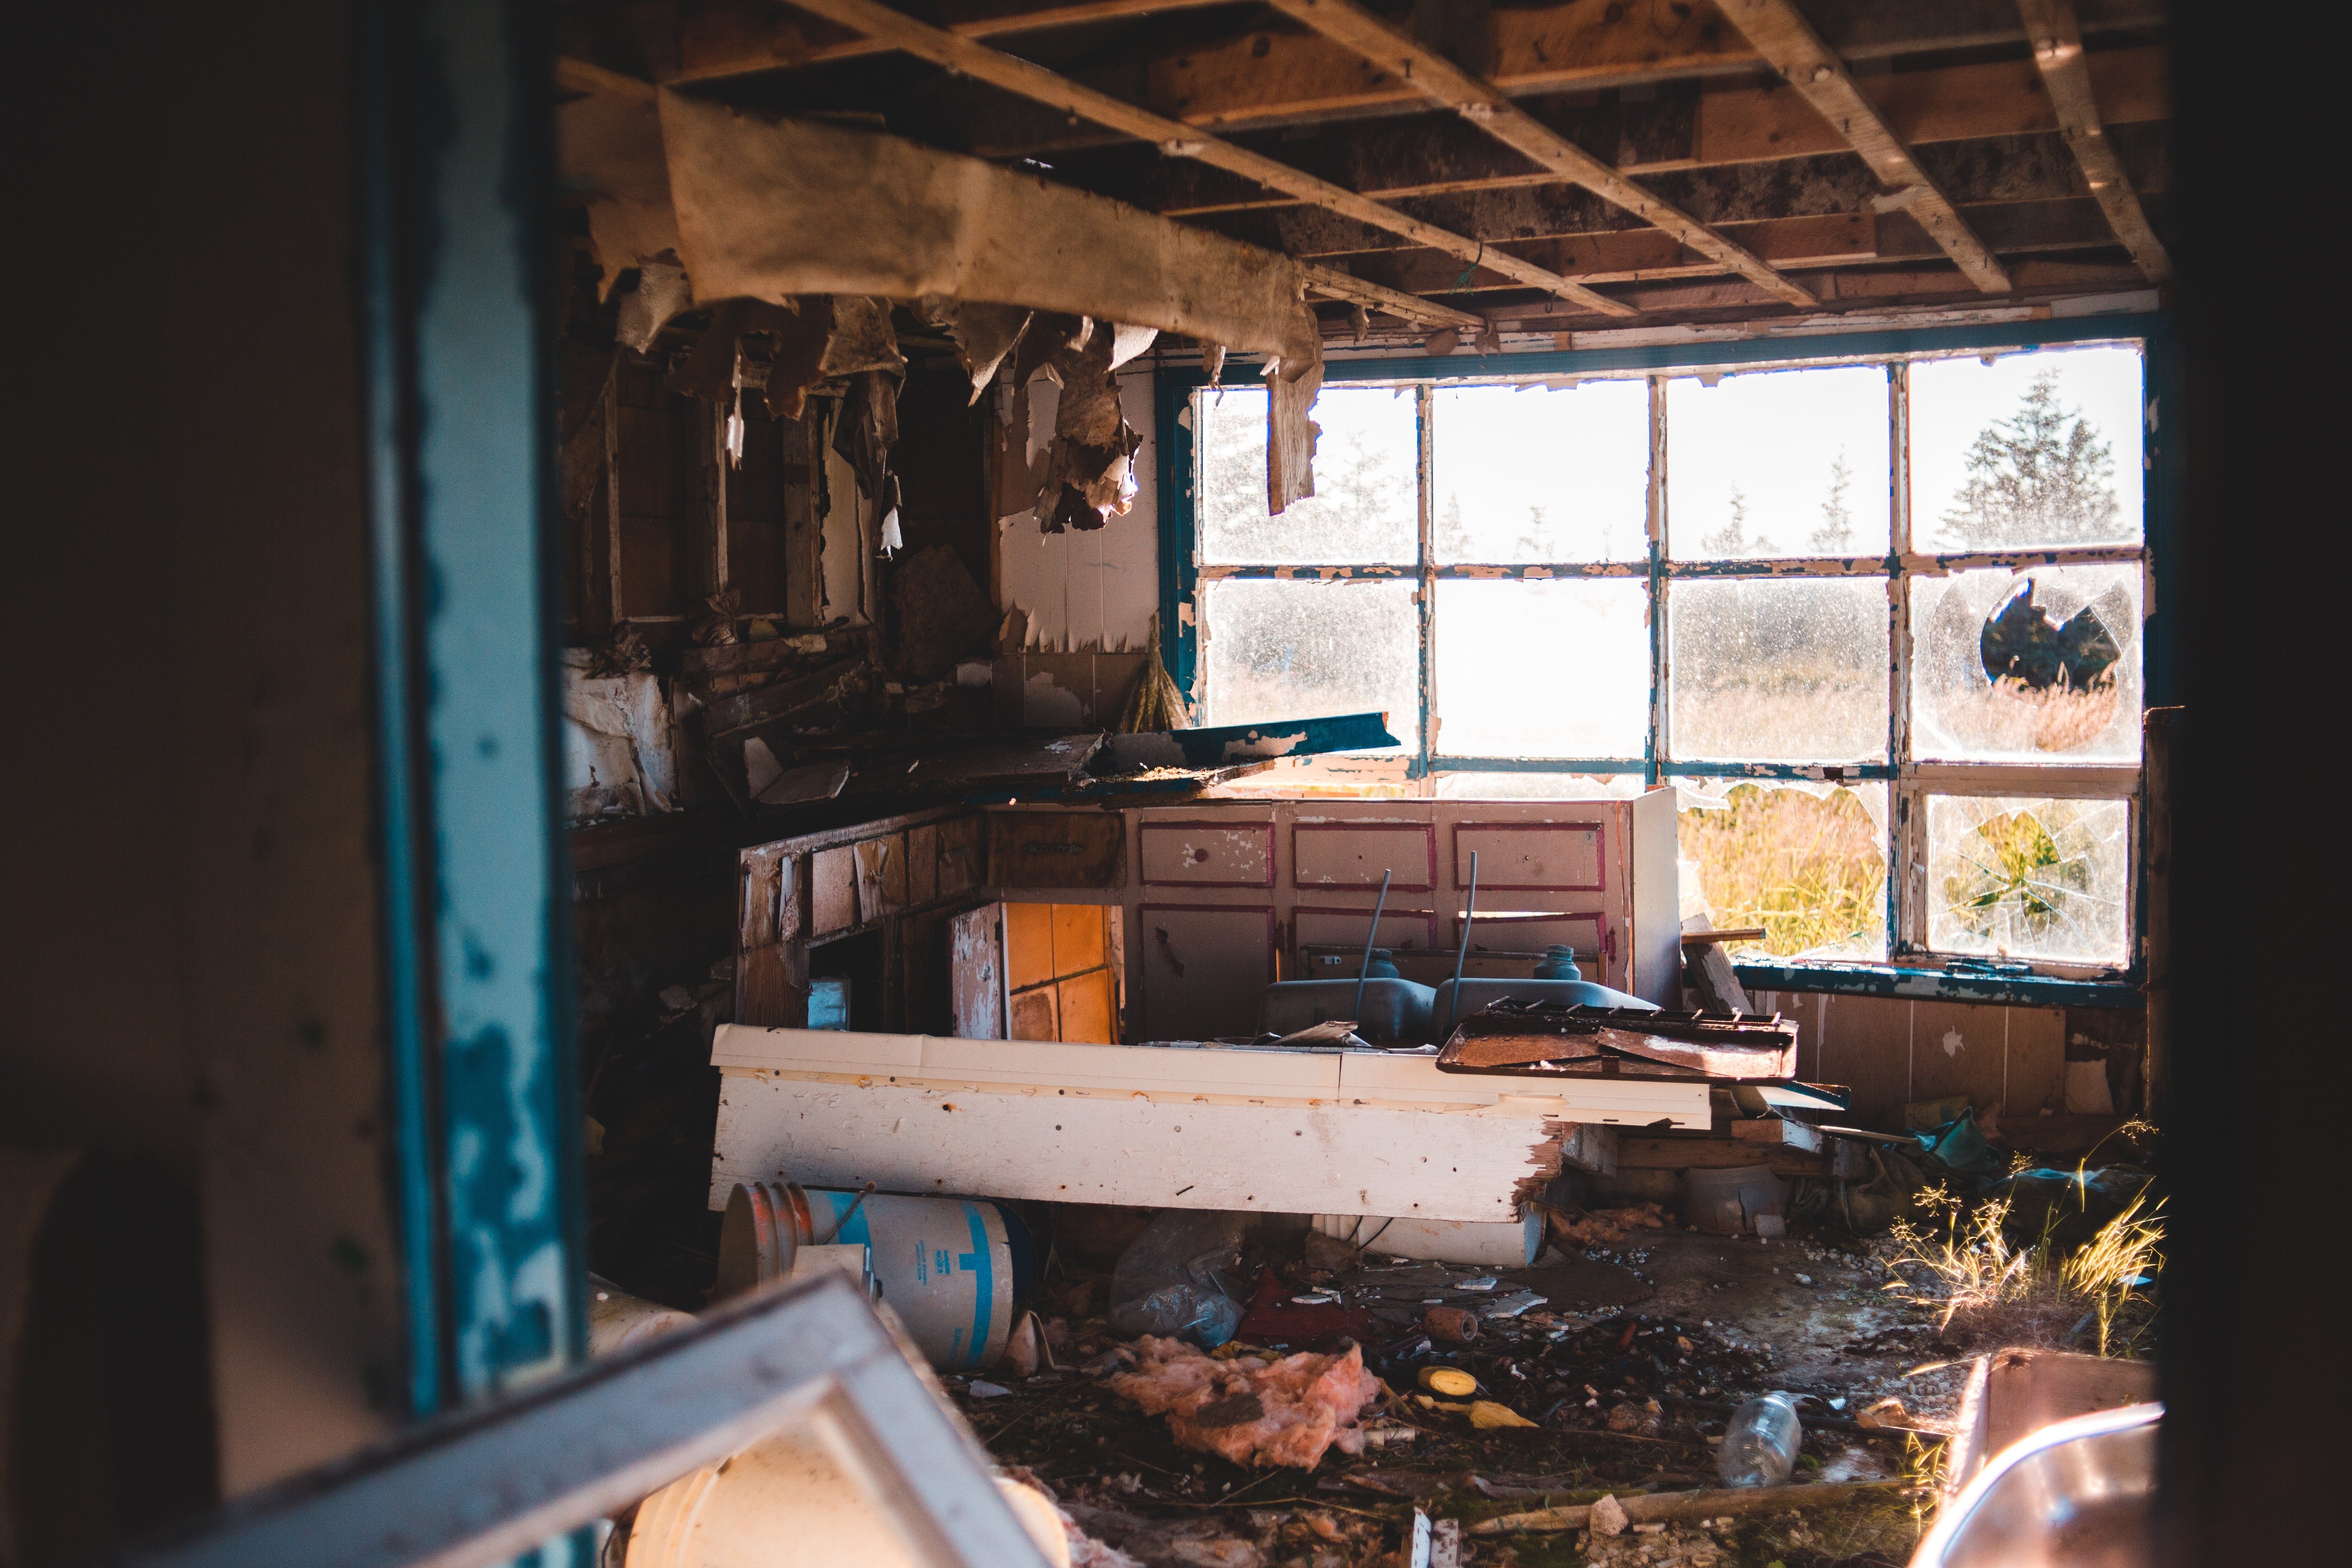 Habitación en total estado de abandono y con suciedad acumulada. | Foto: Pexels